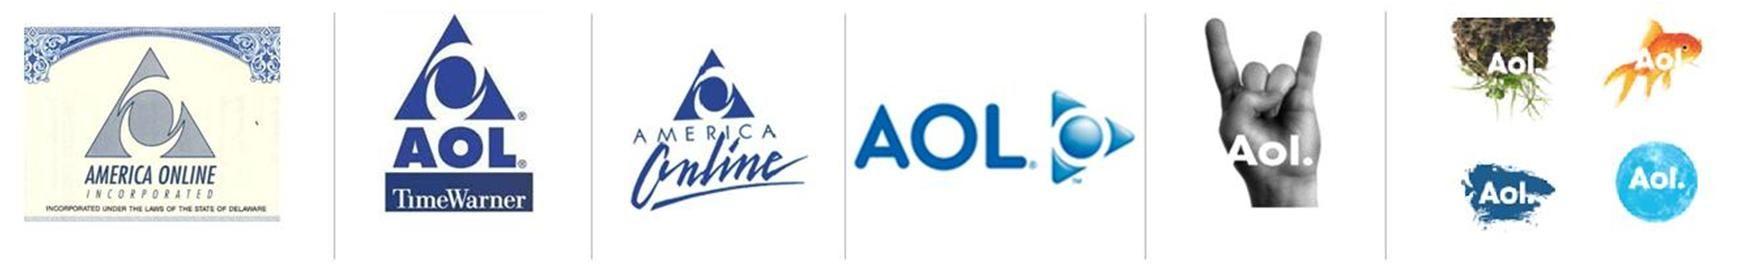 America Online Logo - America Online Logo Evolution | nairr